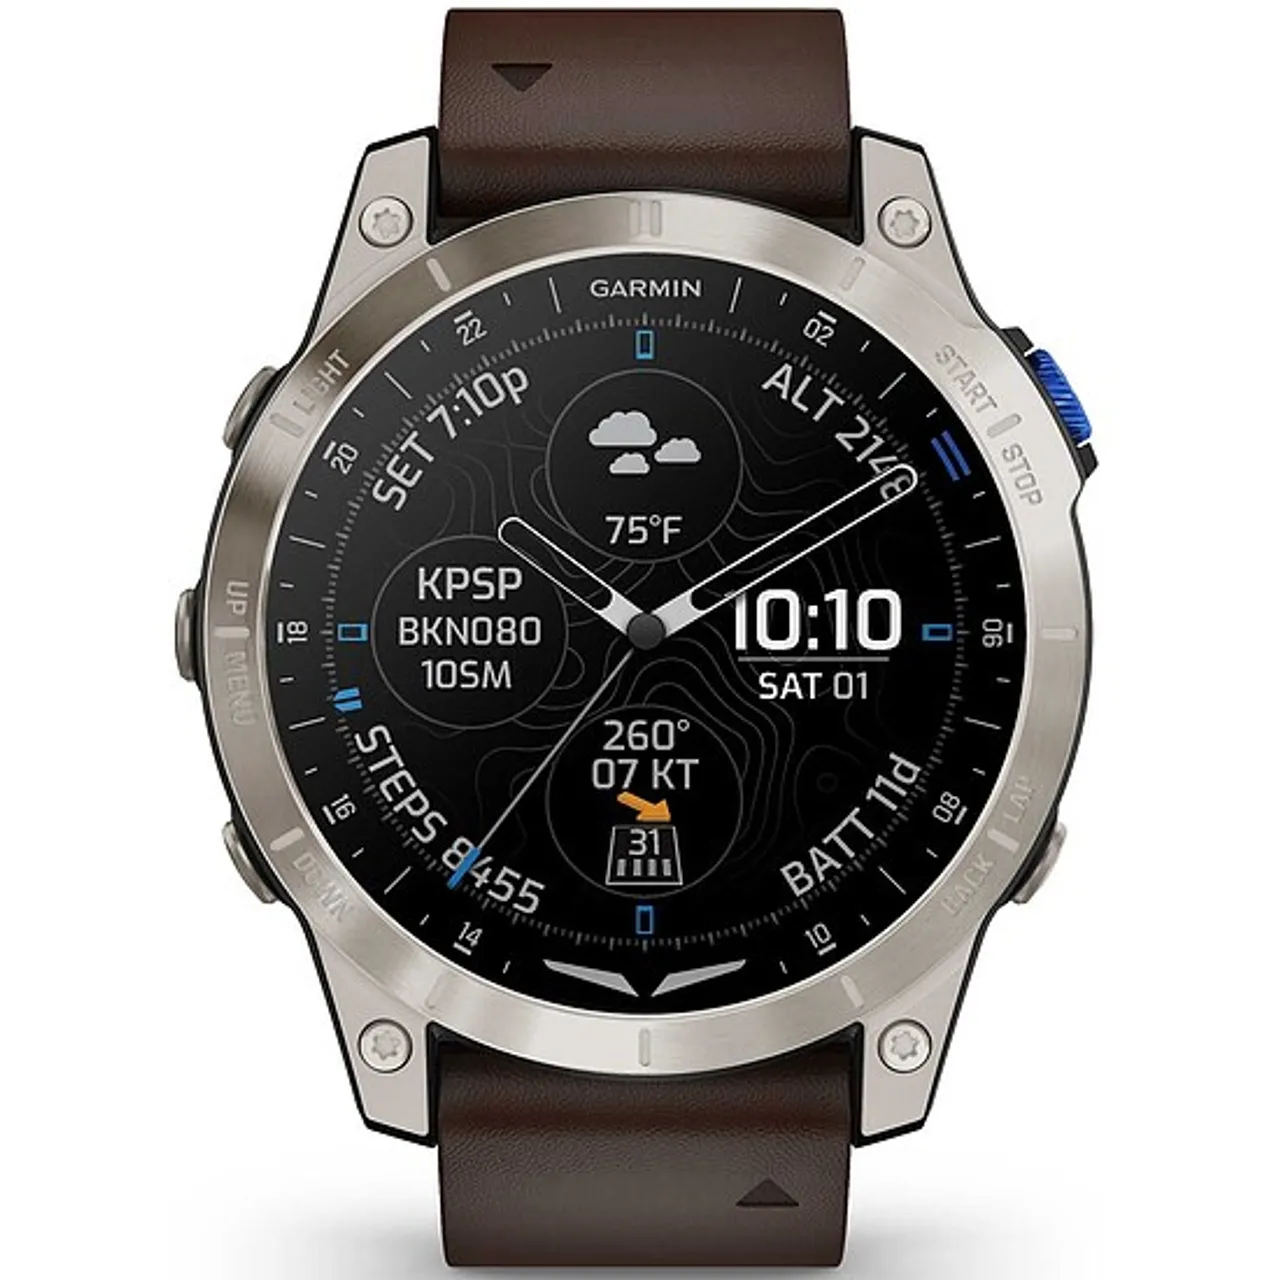 Garmin D2 MACH1 010-02582-55 Aviator Smartwatch GPS-Uhr Multisport GPS Smartwatch - Garmin